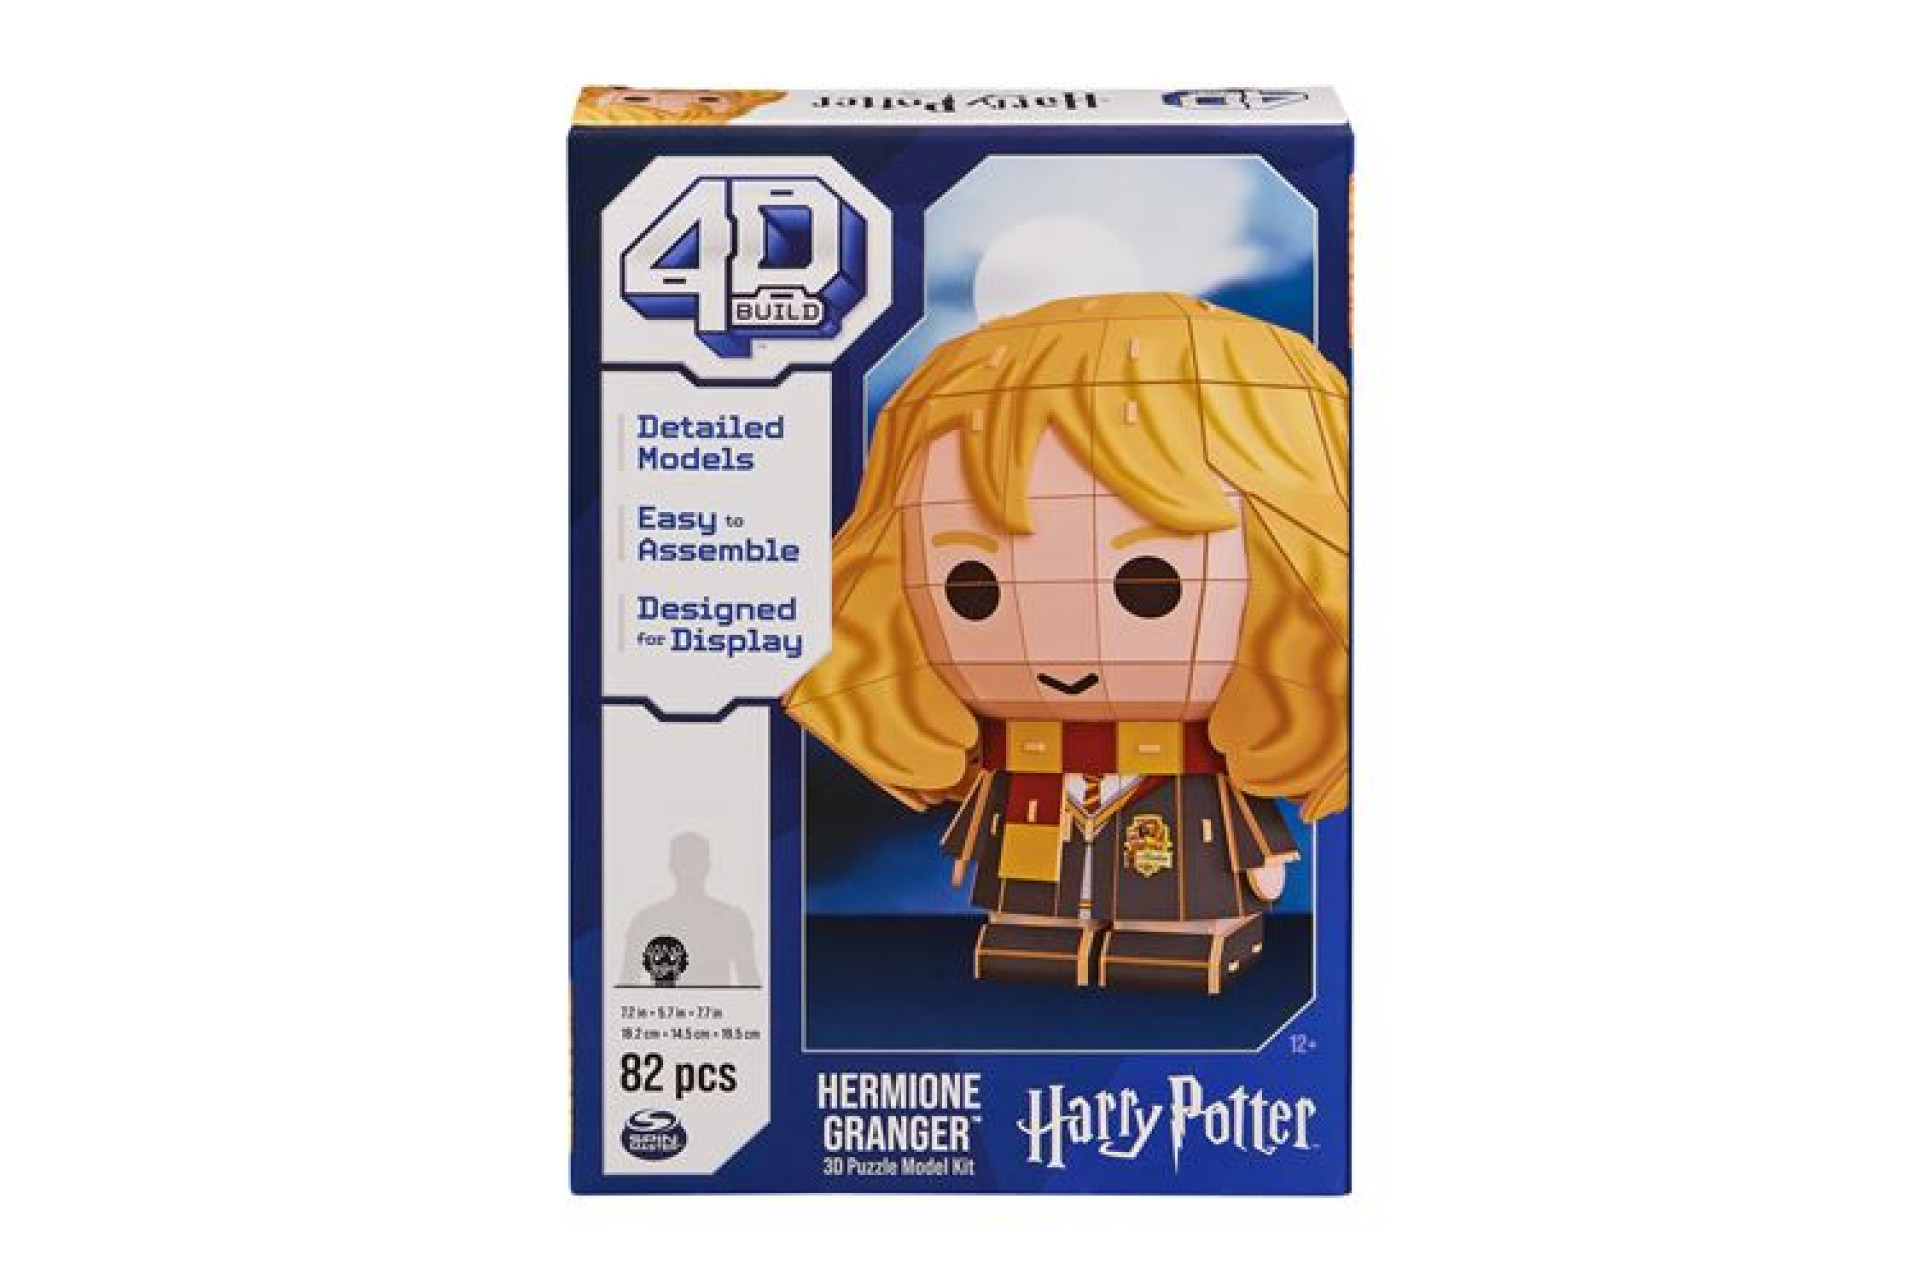 Acheter Puzzle 3D 4D Build Hermione Granger Style Chibi